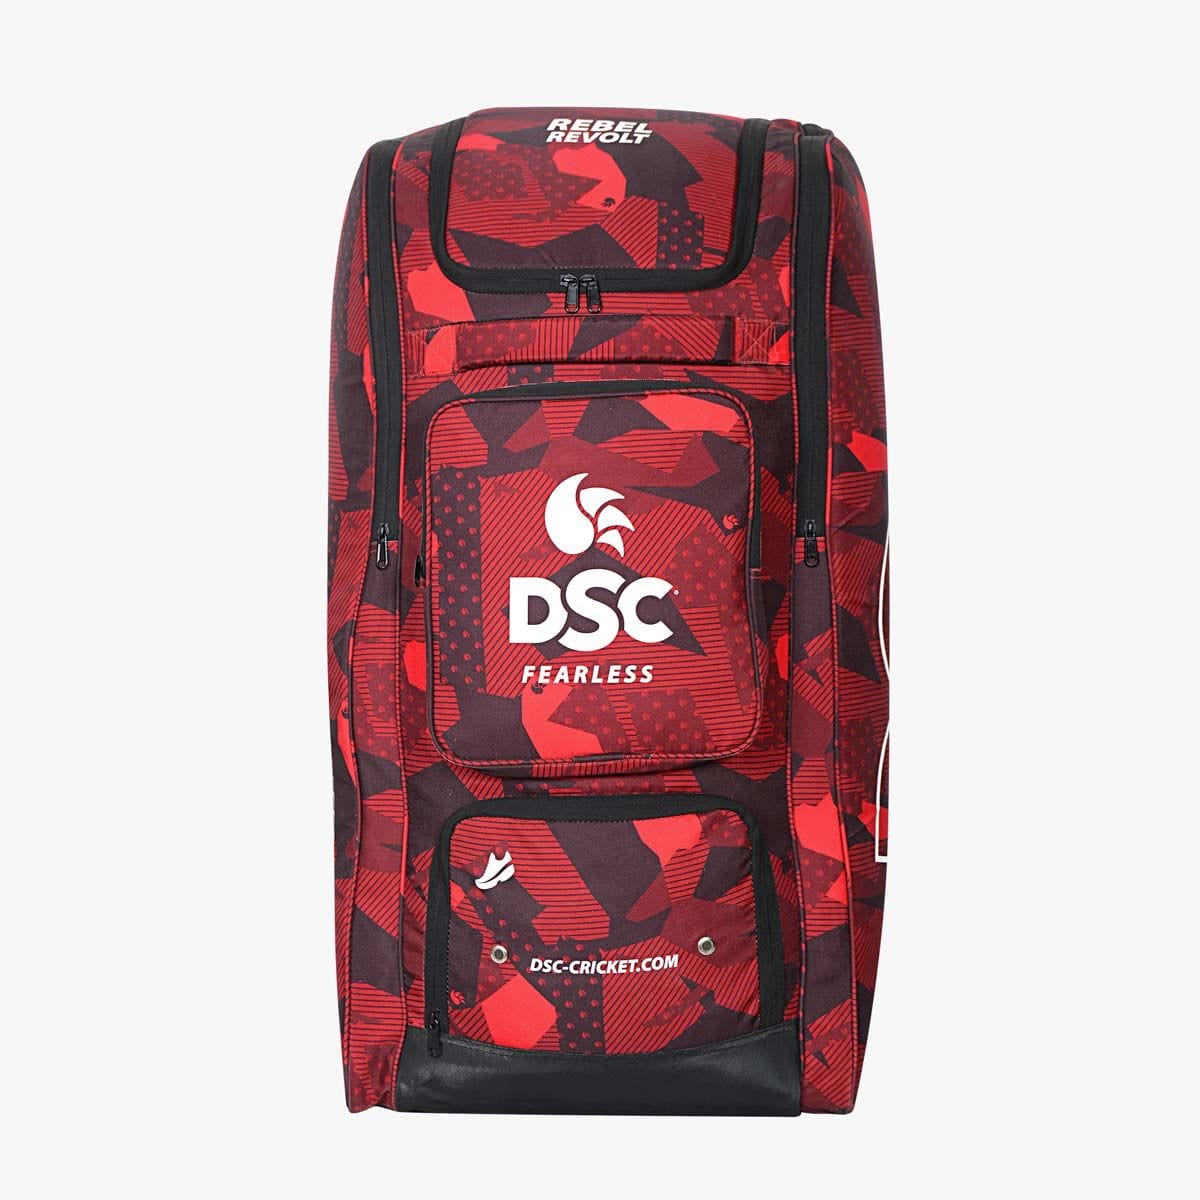 Adidas Cricket Bags DSC Rebel Revolt Duffle Cricket Bag